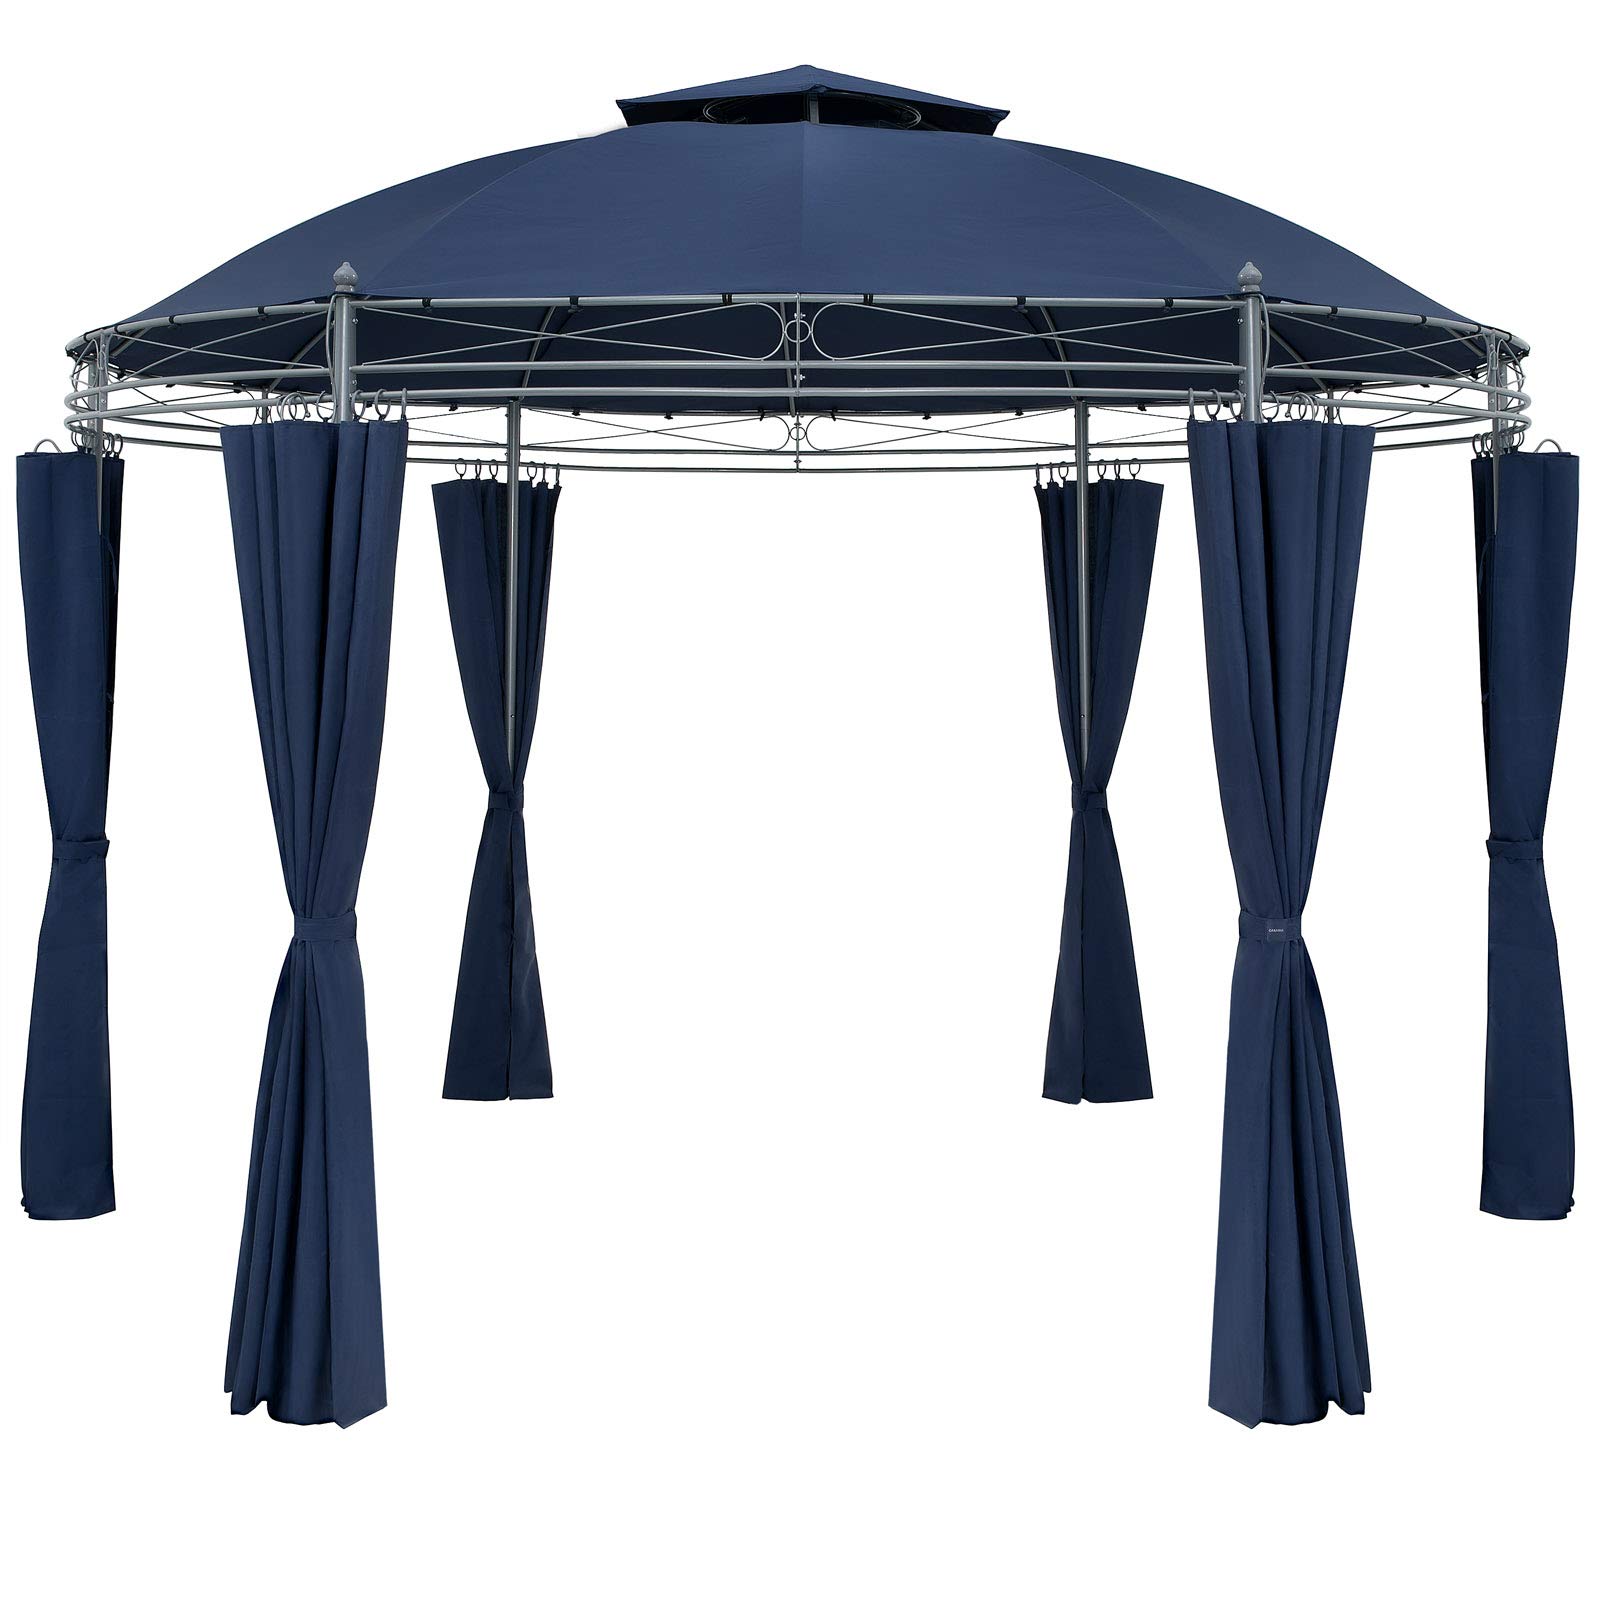 CASARIA® Pavillon Toscana Ø350cm Metall Wasserabweisend UV-Schutz 50+ Stabil Gartenzelt Gartenpavillon Luxus Modern Blau